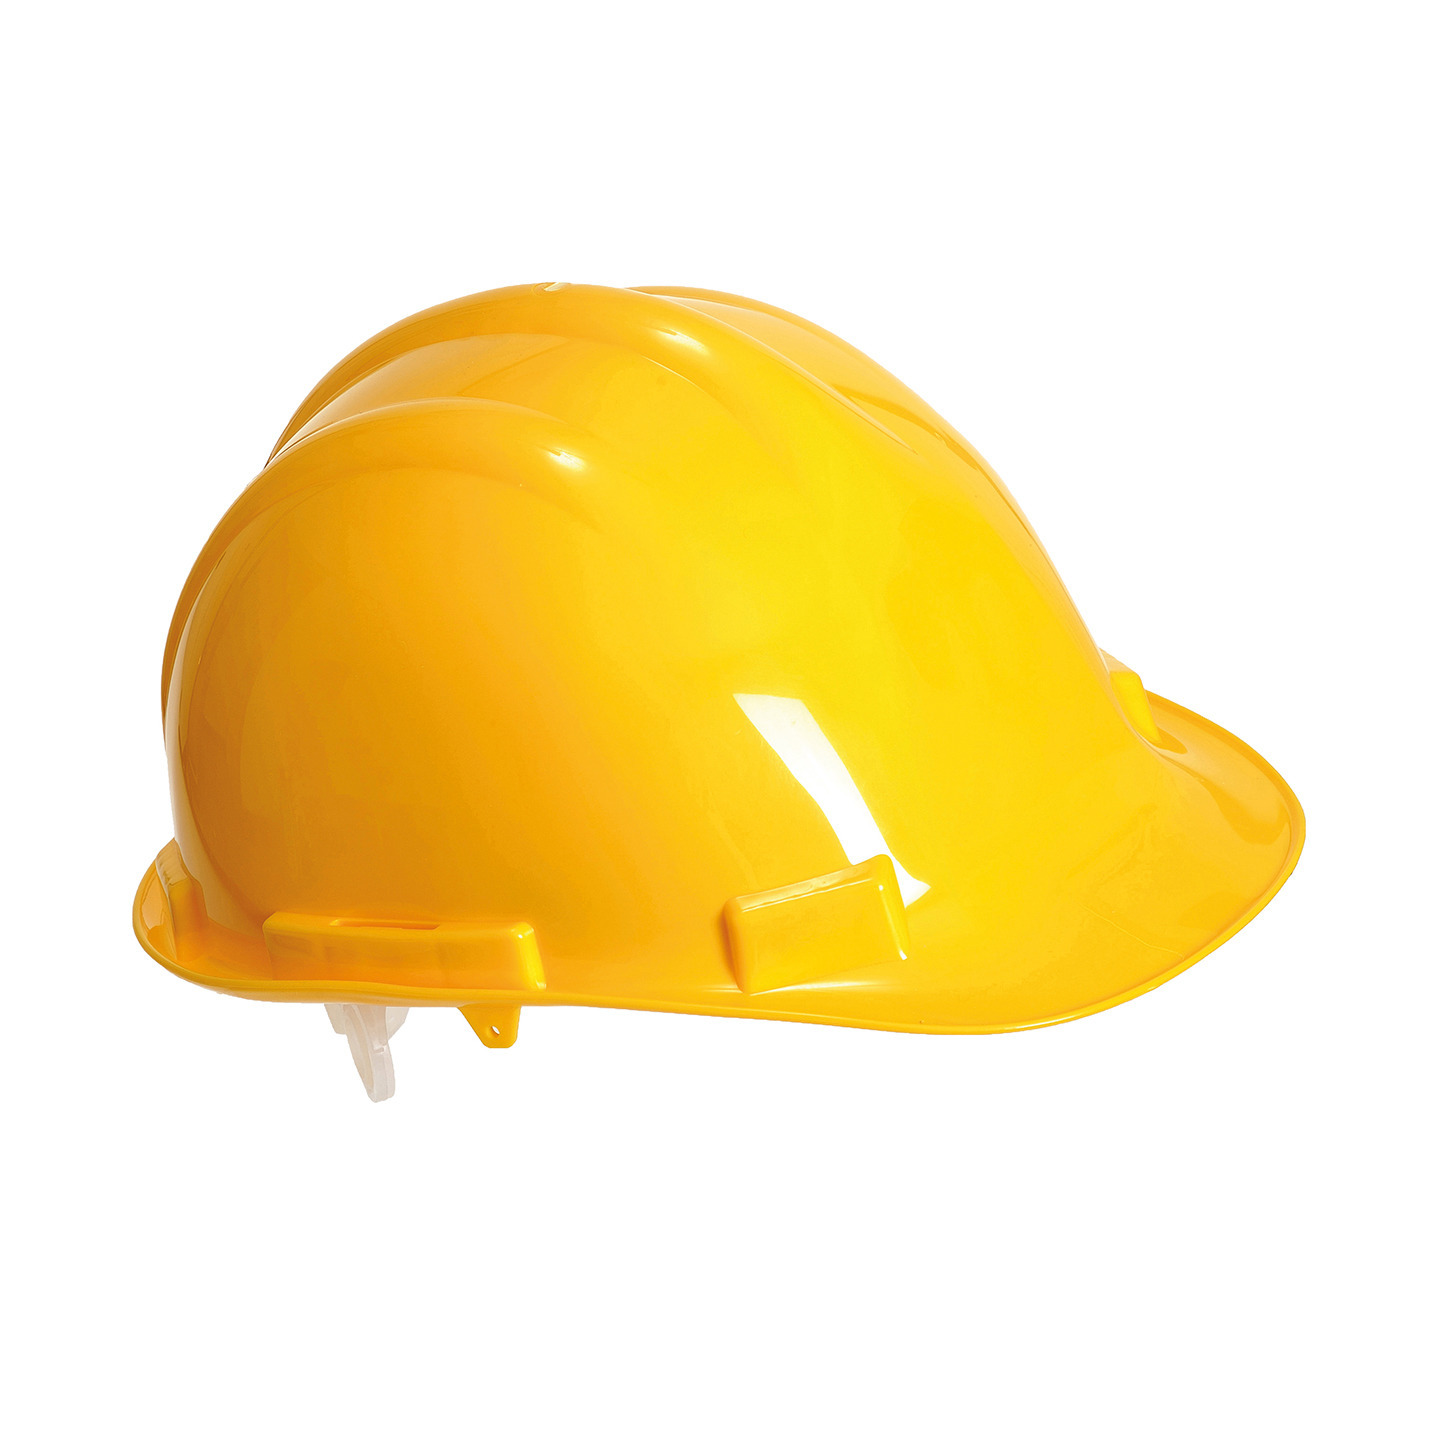 Set van 2x stuks veiligheidshelmen-bouwhelmen hoofdbescherming geel verstelbaar 55-62 cm